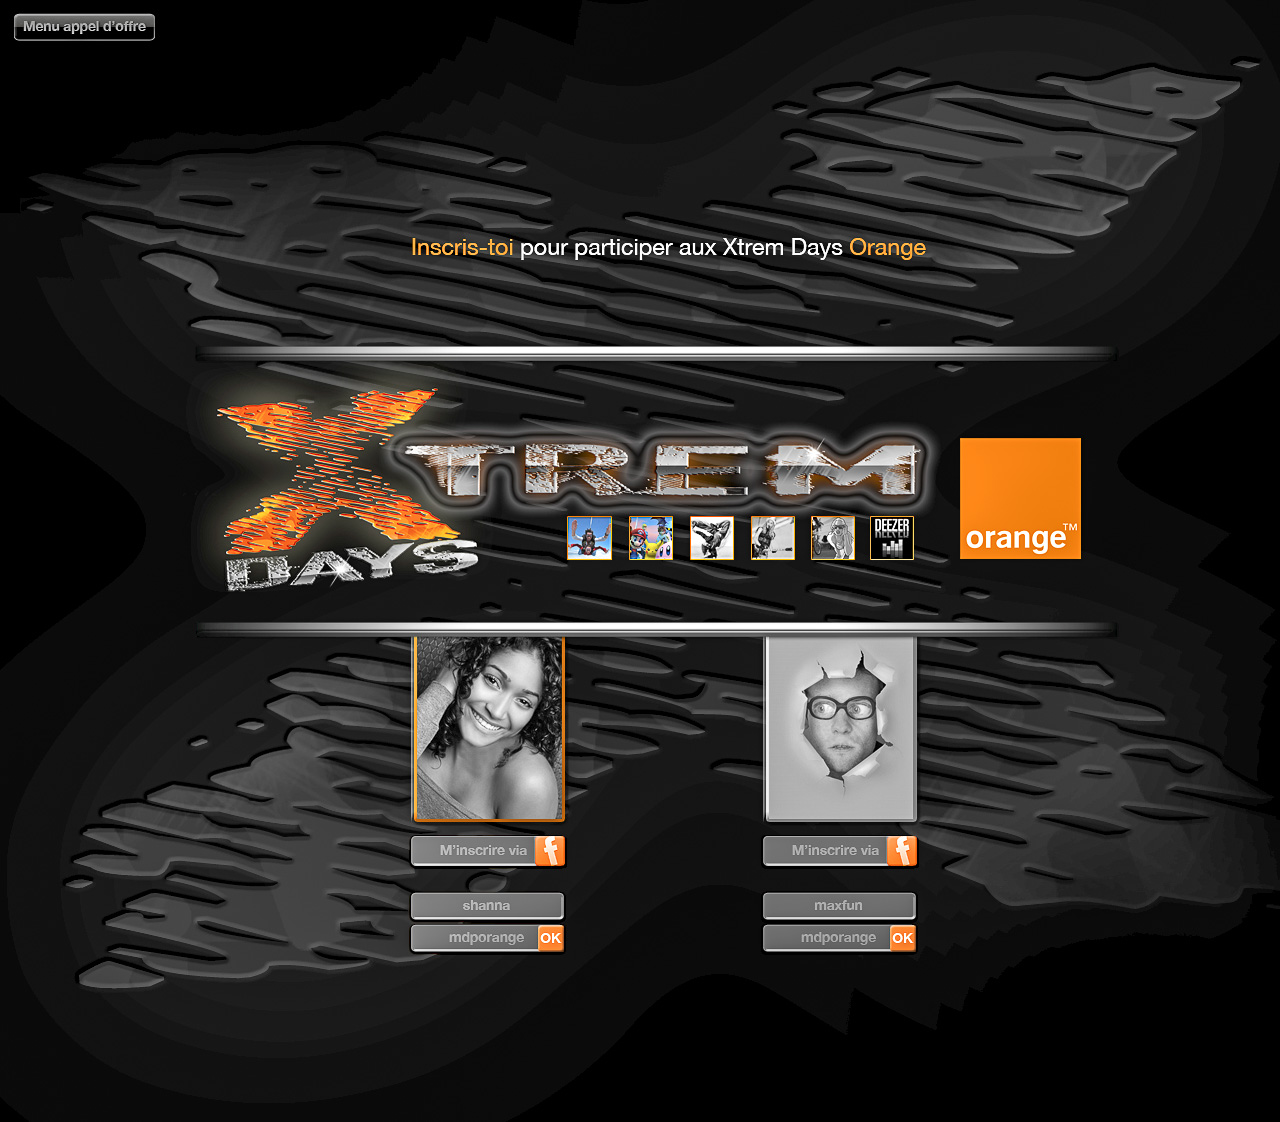 Portail Xtrem Days Orange, pour échanger avec sa tribu, se tenir informé des journées spéciales, etc.